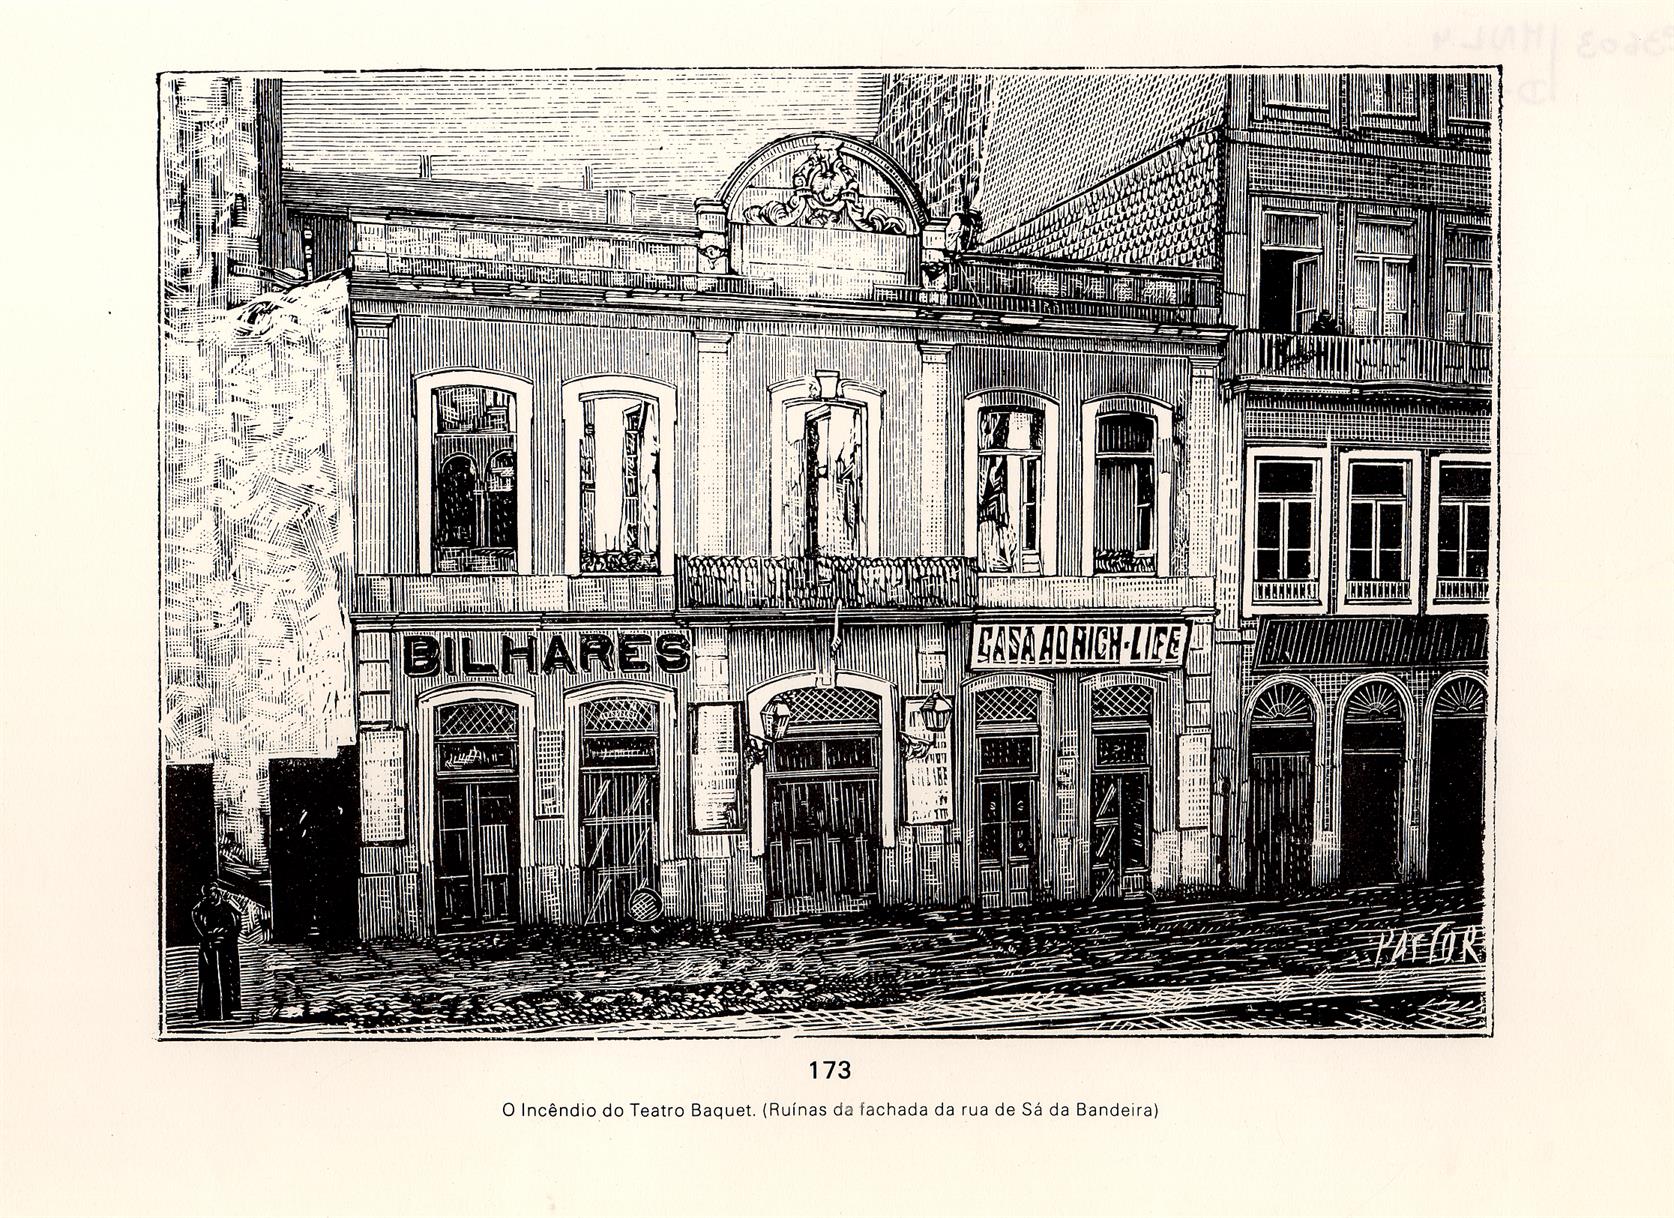 O incêndio do Teatro Baquet : ruínas da fachada da Rua de Sá da Bandeira